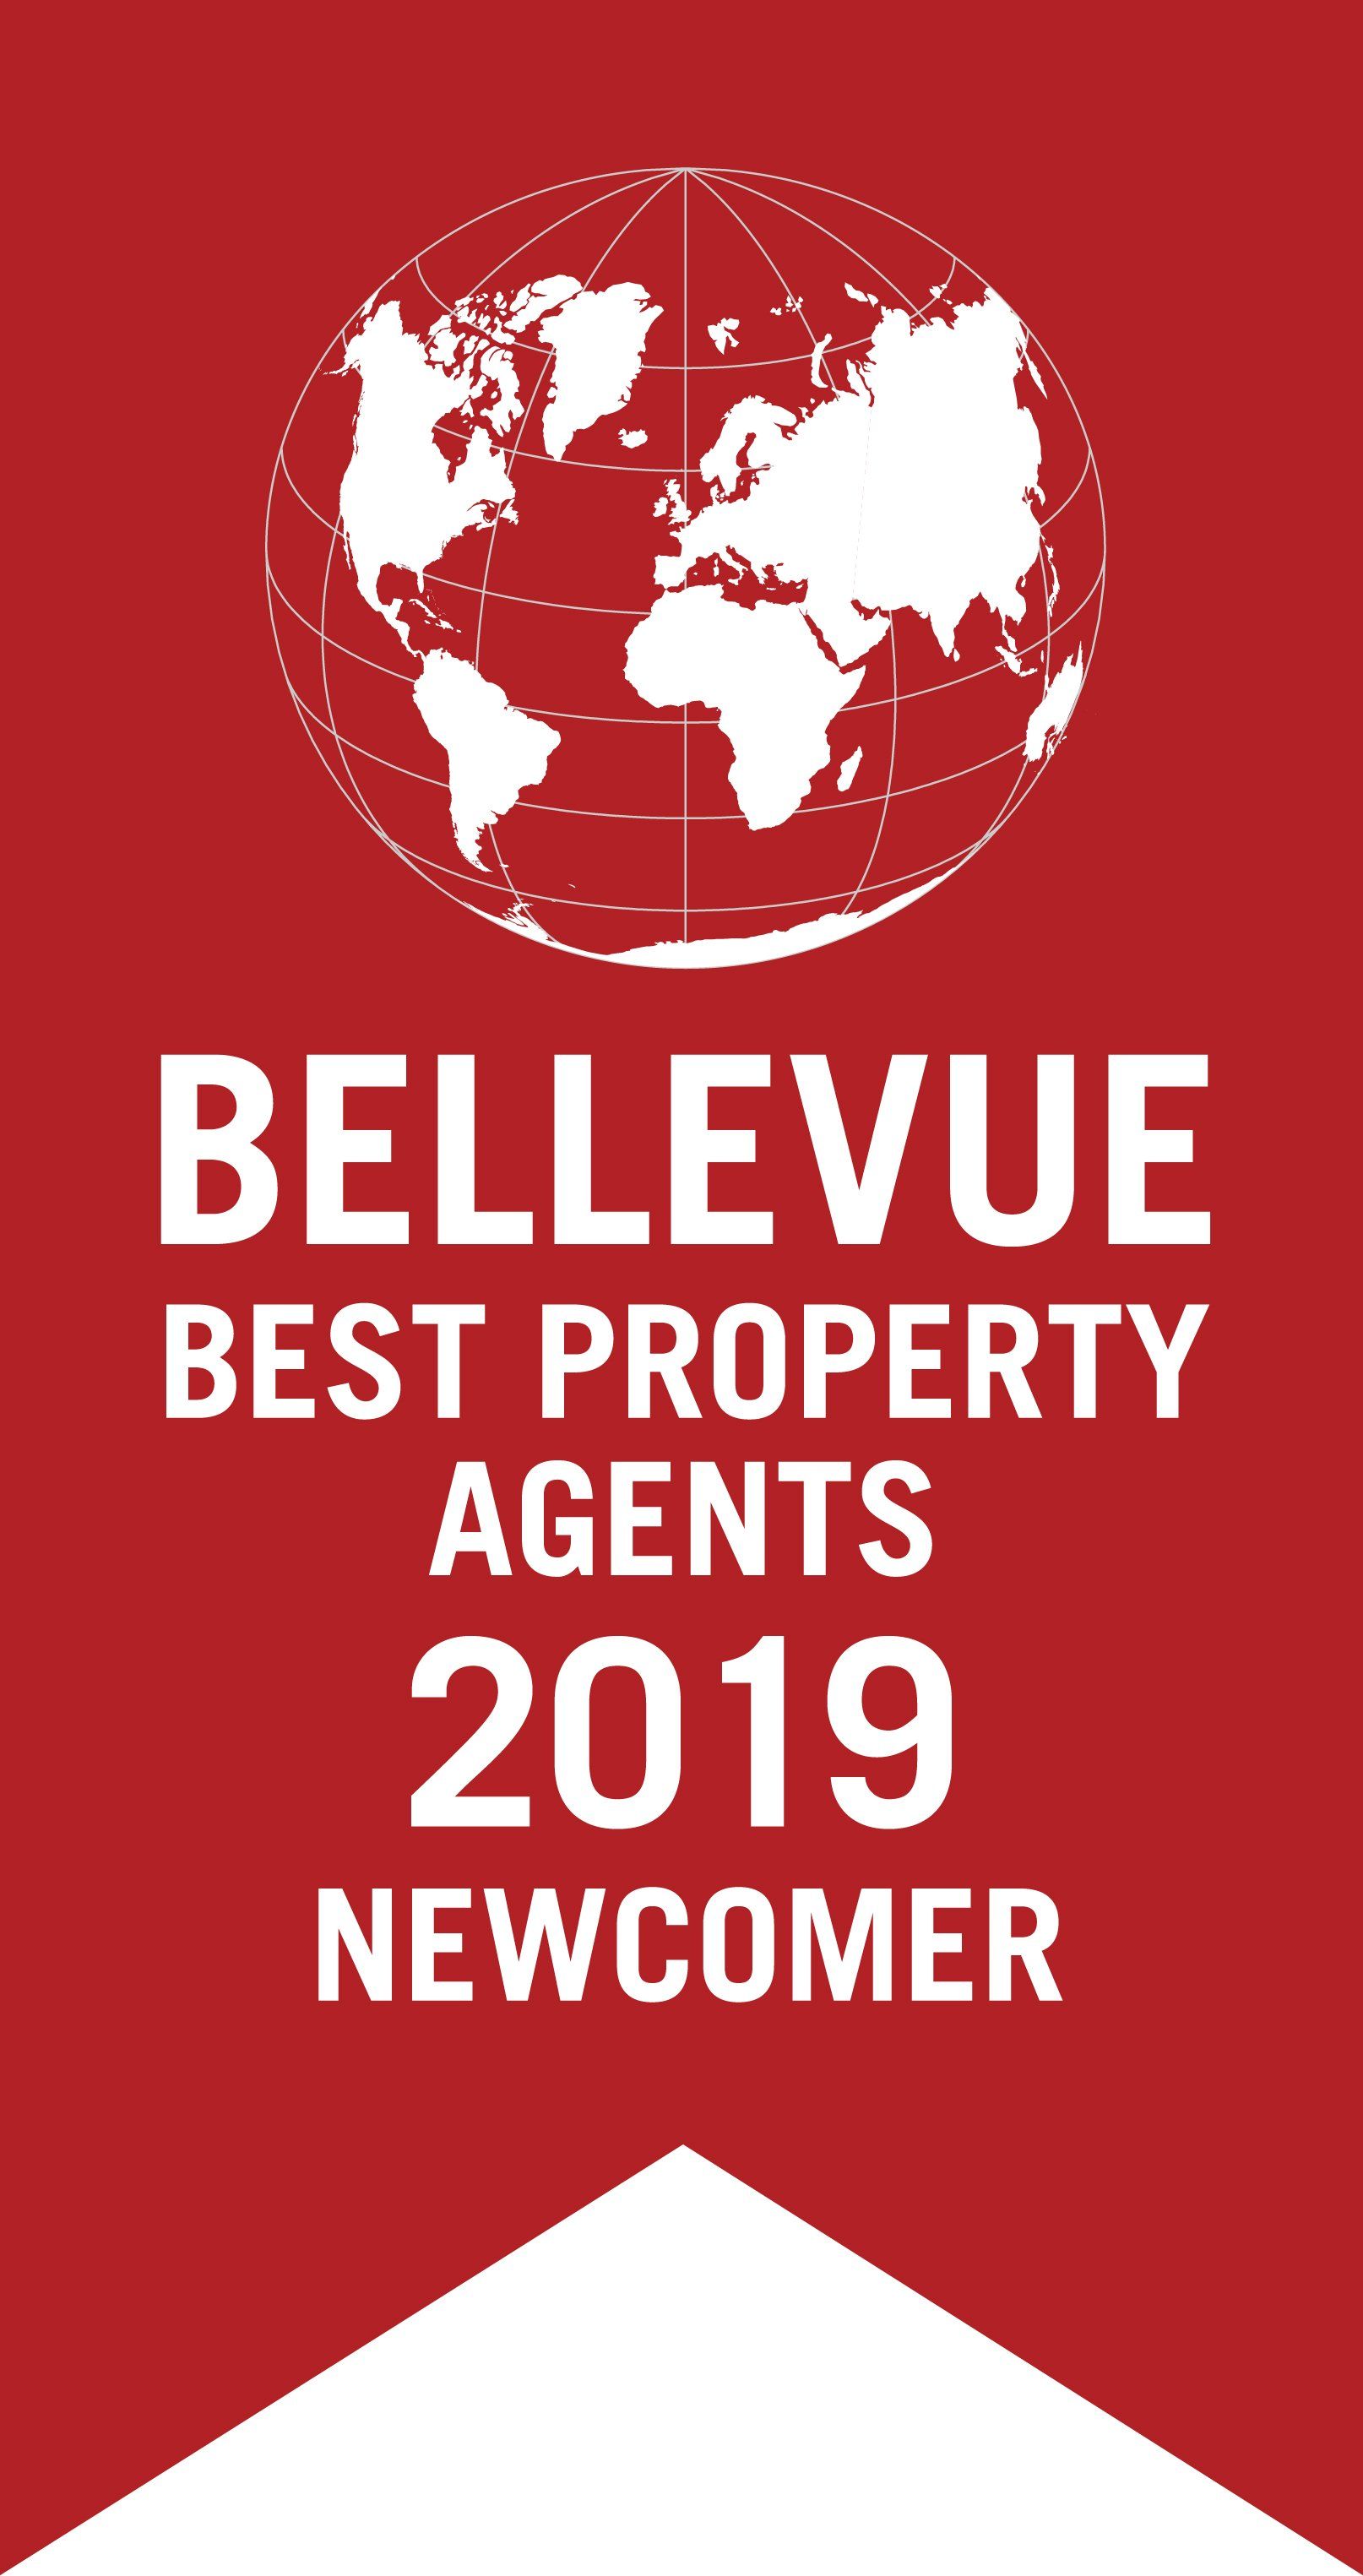 Immobilienmakler Ludwigsburg Bellevue Best Property Agent Auszeichnung